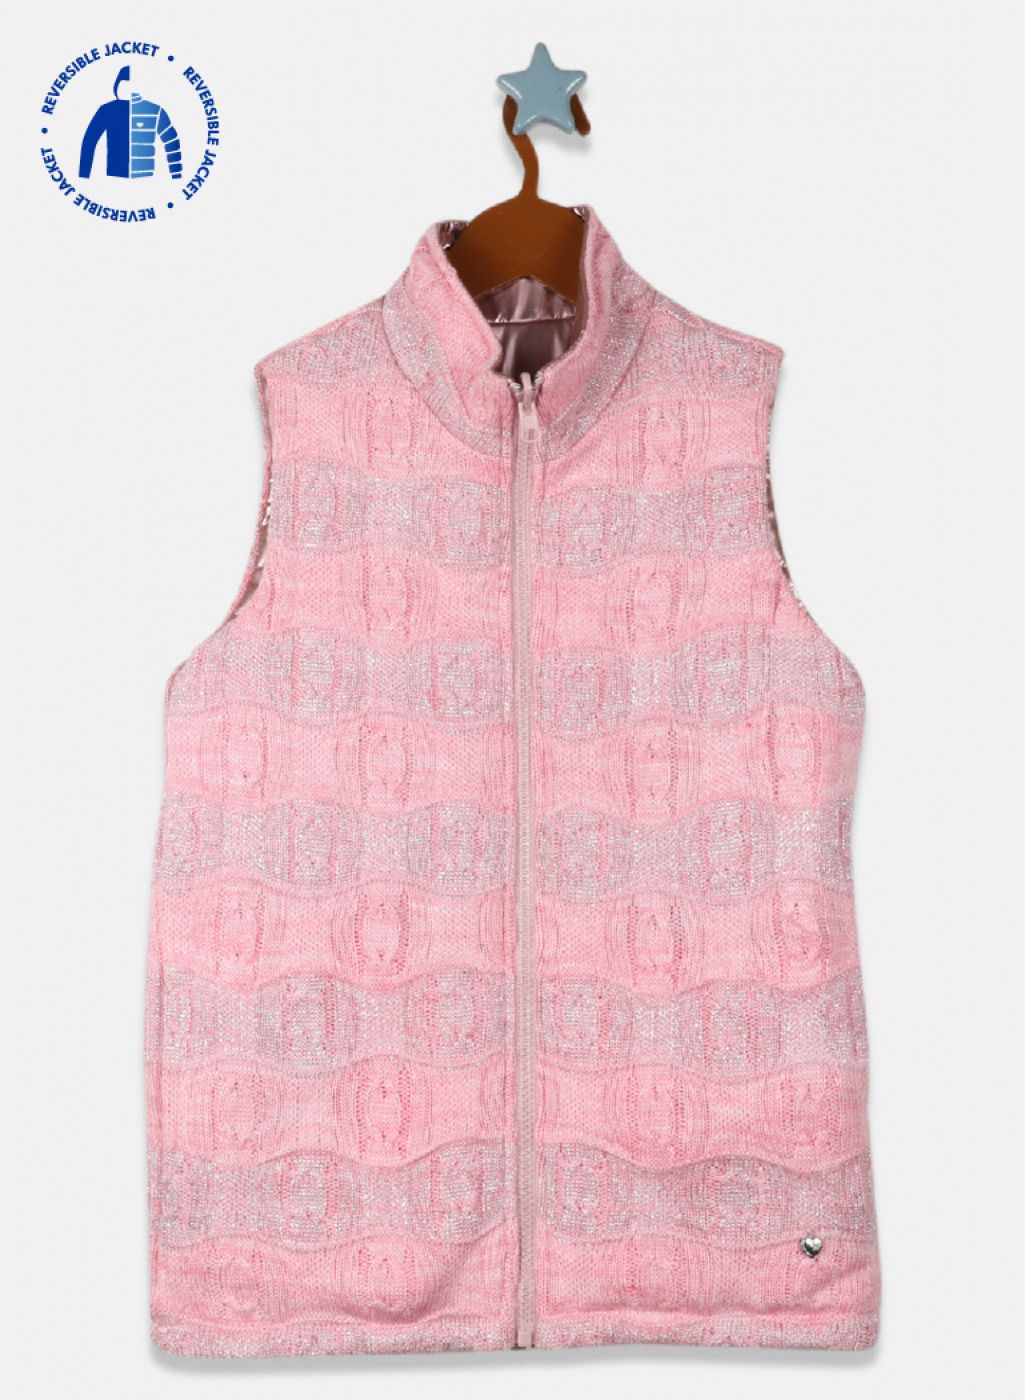 Buy Woman's Fleece Vest Online In India -  India